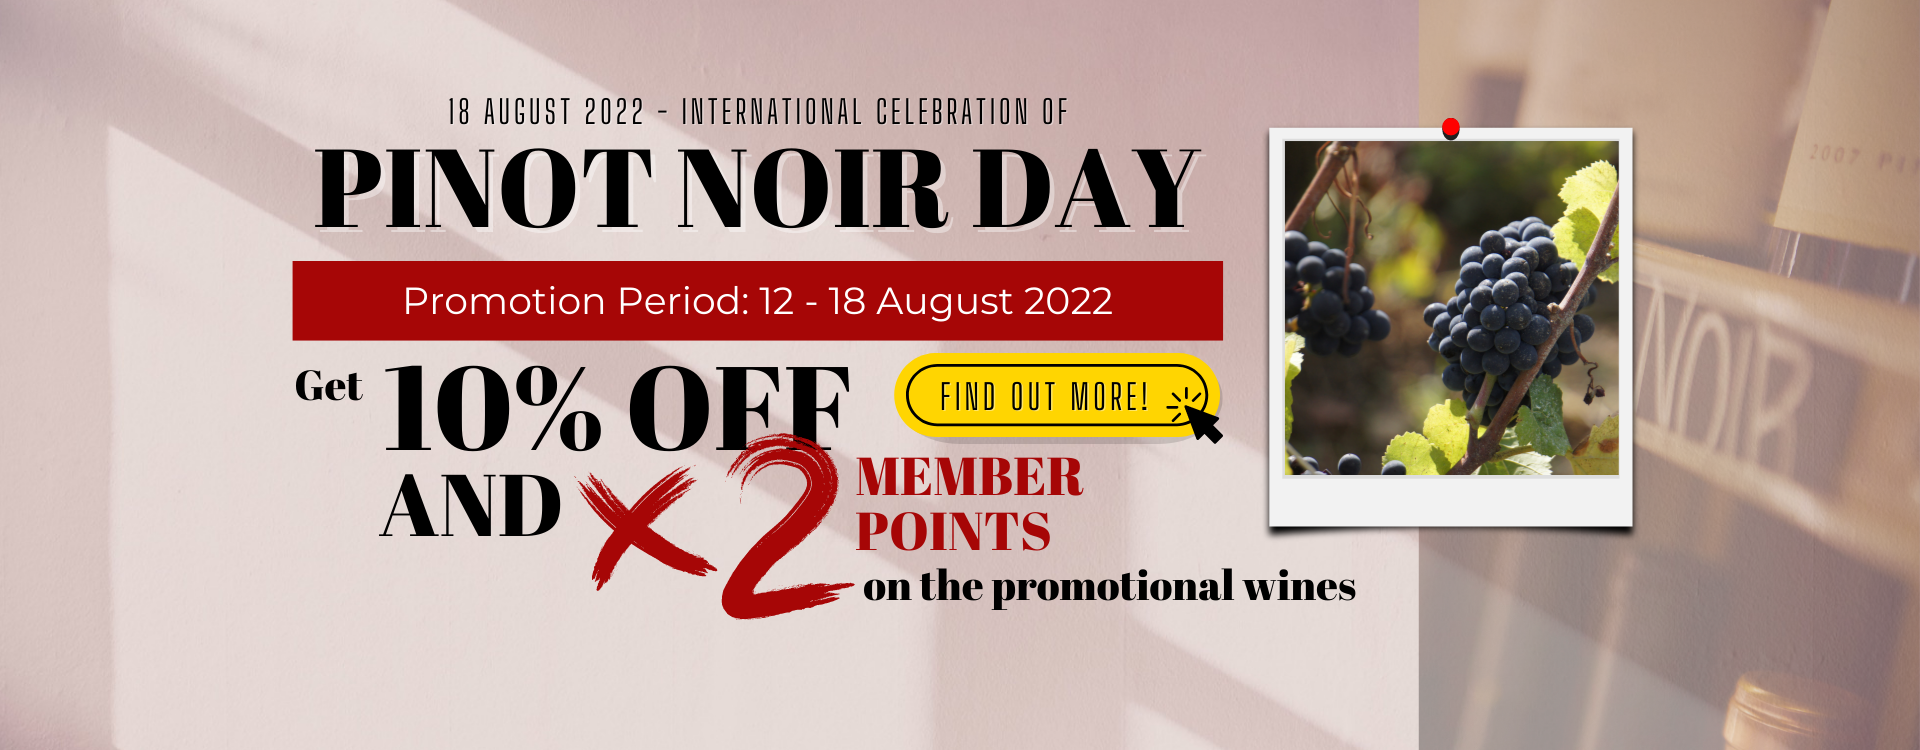 International Pinot Noir Day 2022 ewineasia website banner